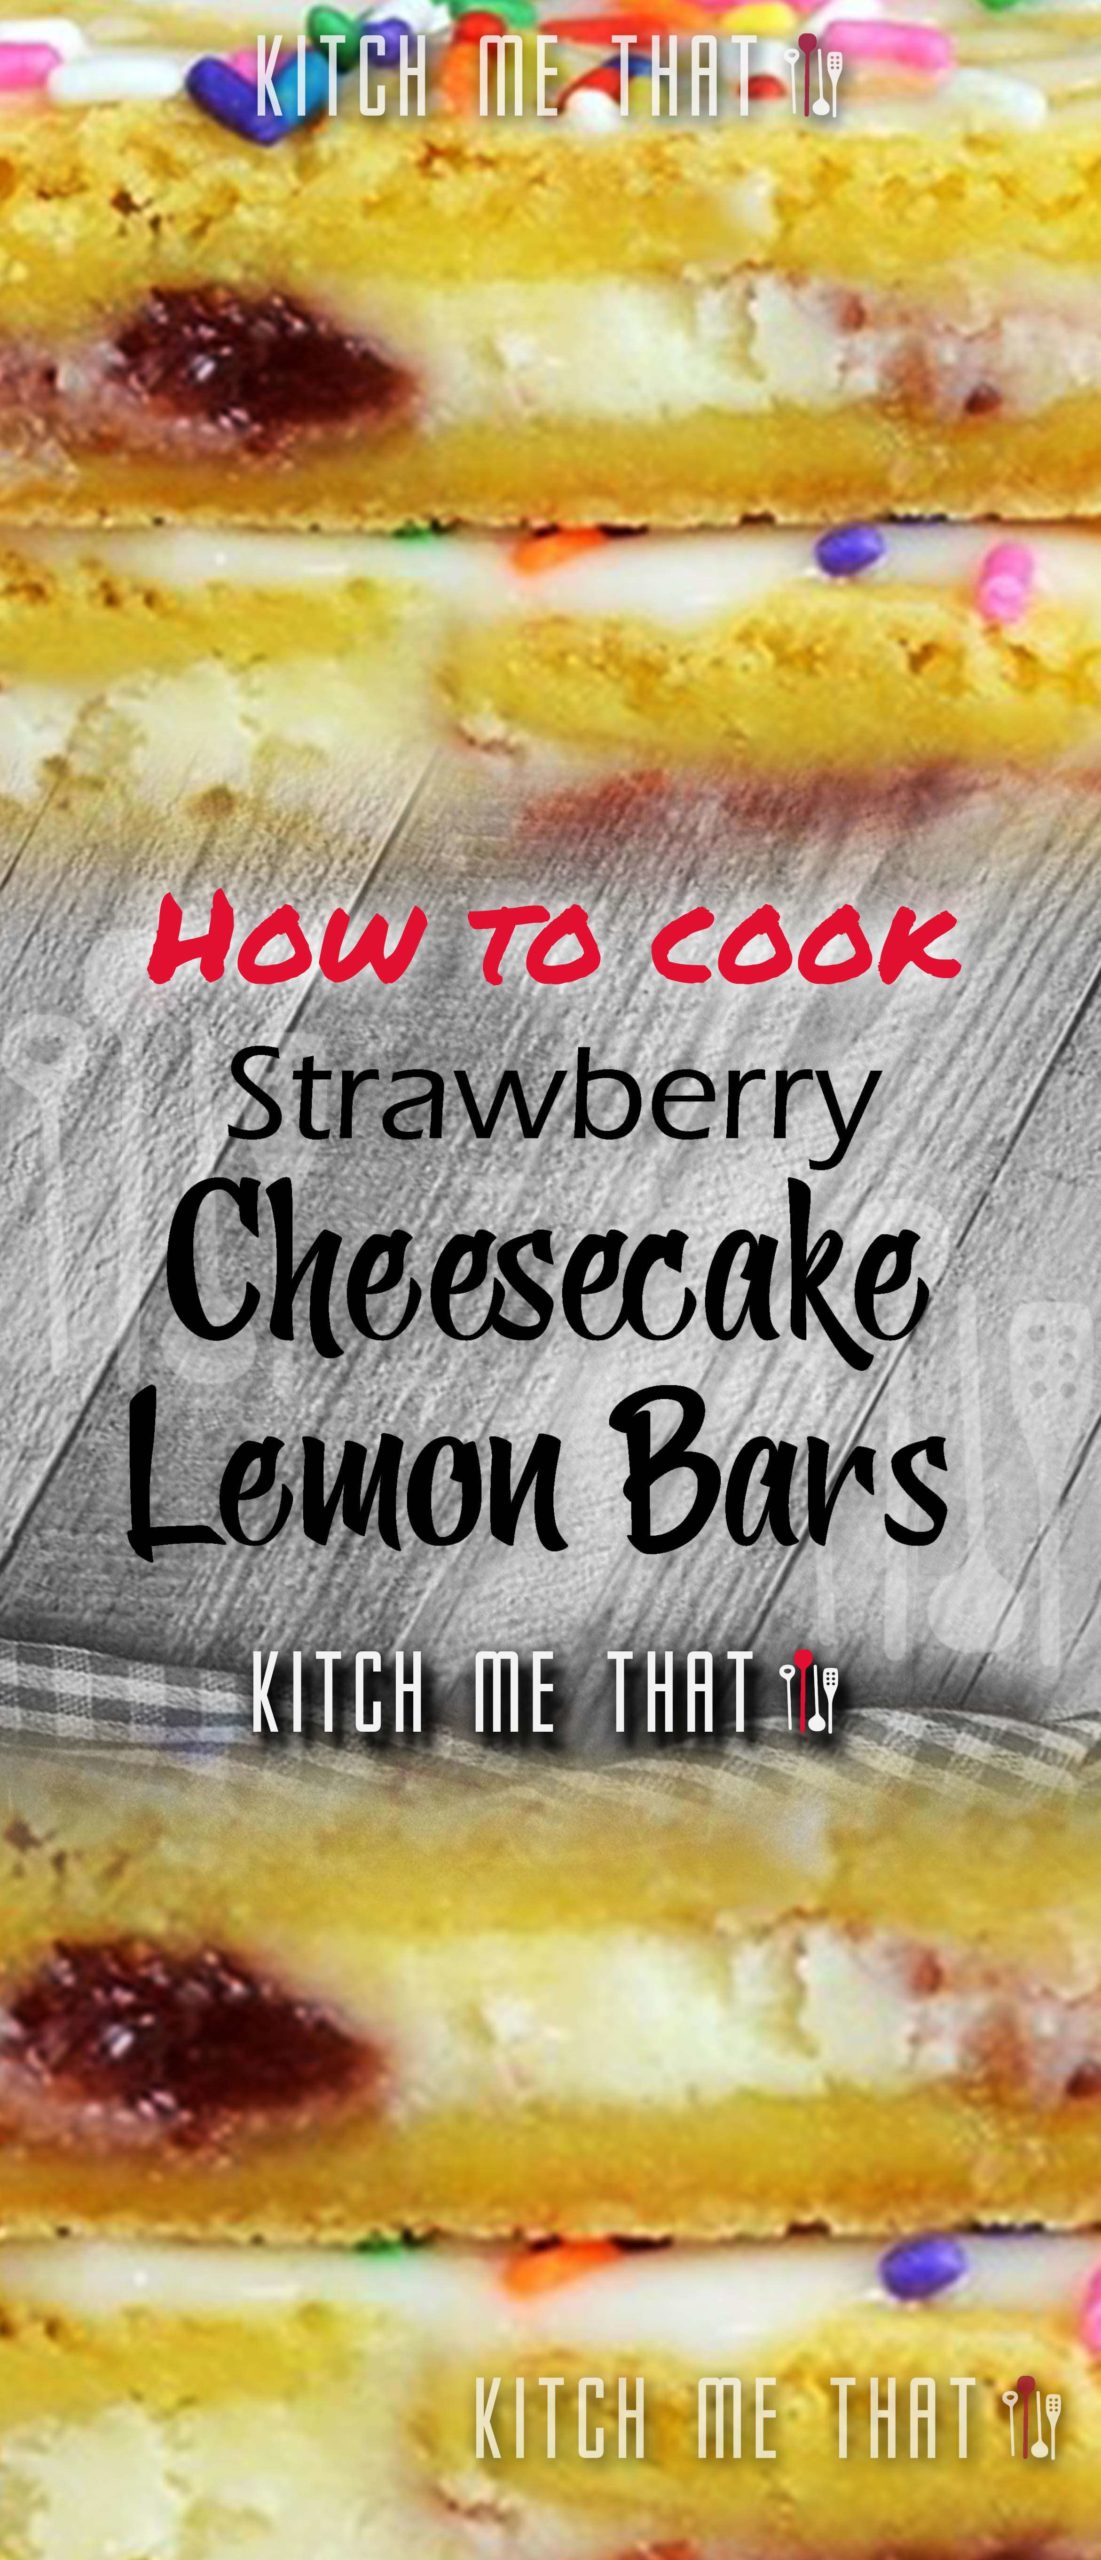 Strawberry Cheesecake Lemon Bars